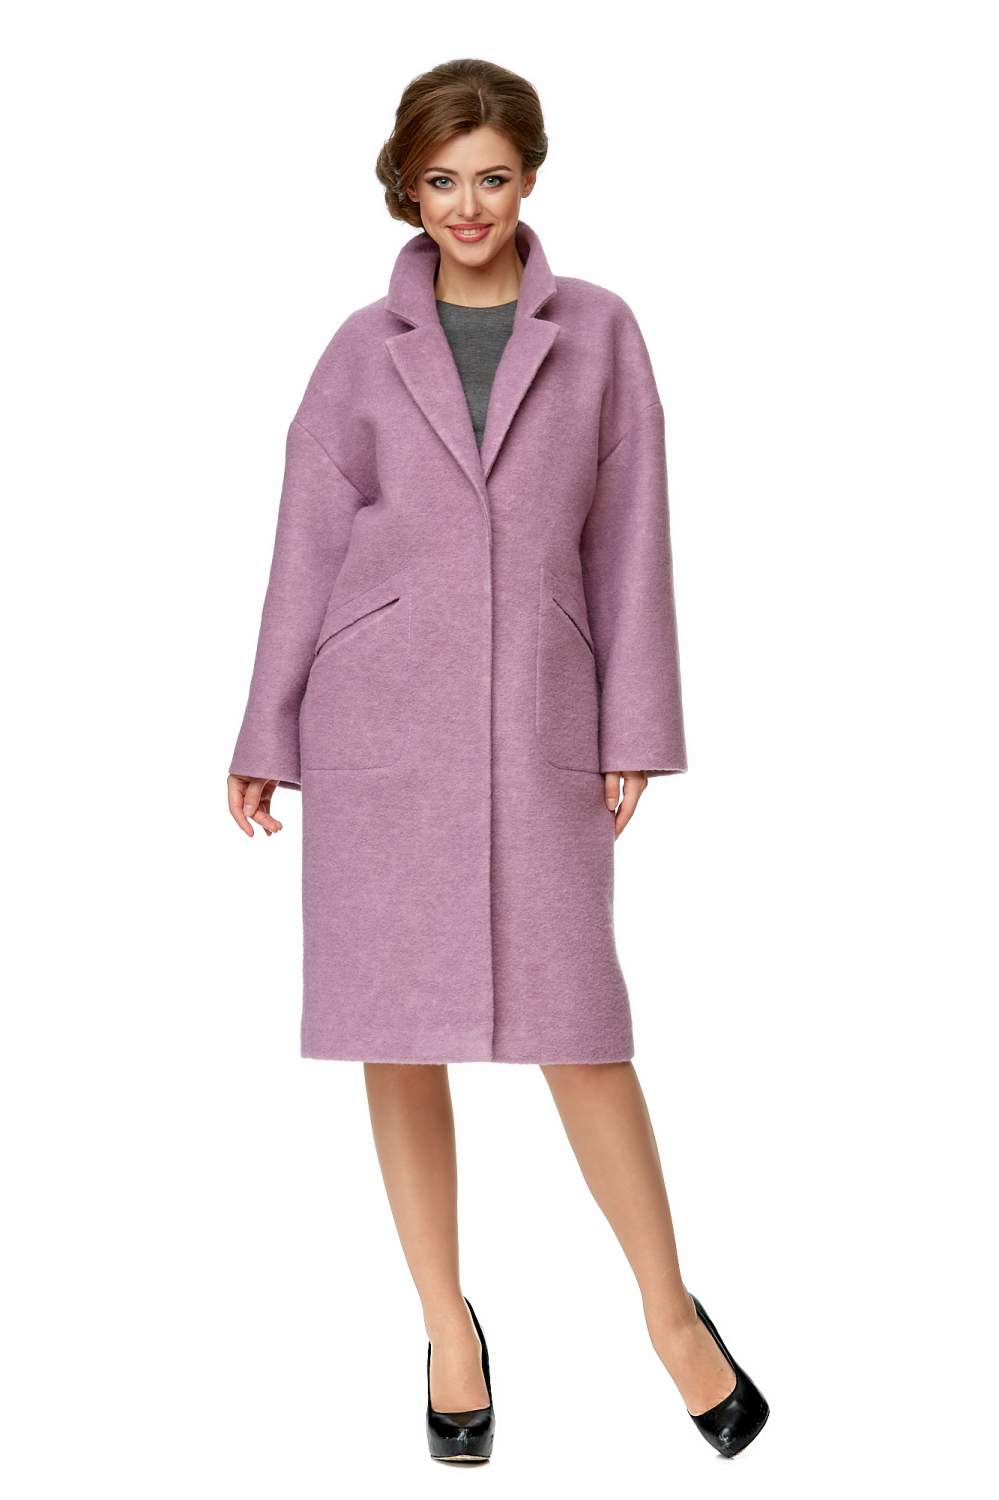 Пальто женское МОСМЕХА 8001977 фиолетовое 44 RU - купить в Москве, цены на СберМегаМаркет